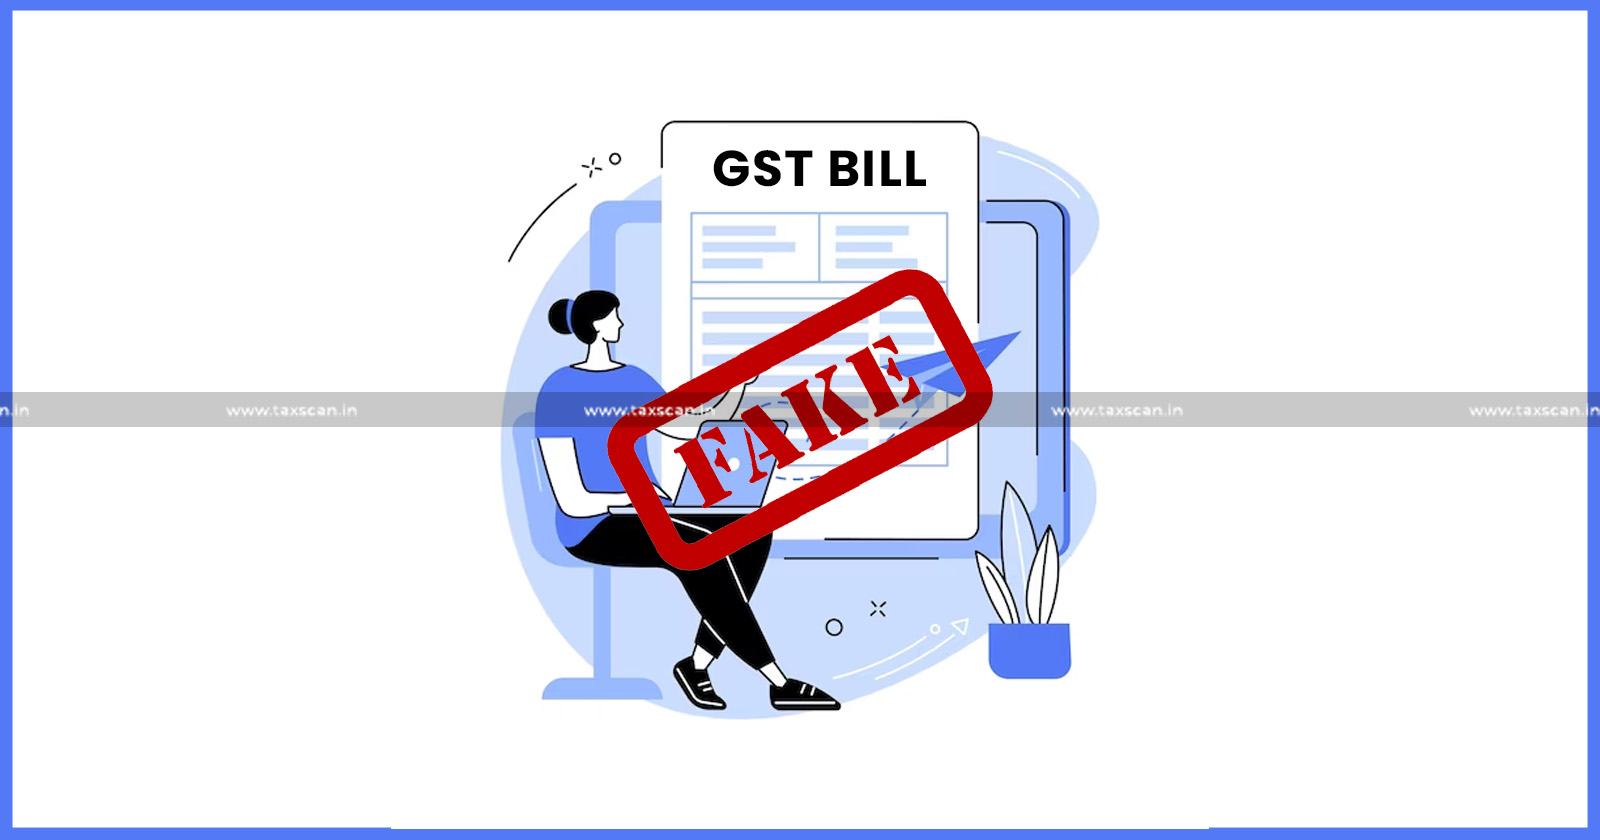 GST Scam Alert - GST Scam - GST - Fake GST Bills Generated by Shops to Defraud Customers - Fake GST Bills - Taxscan